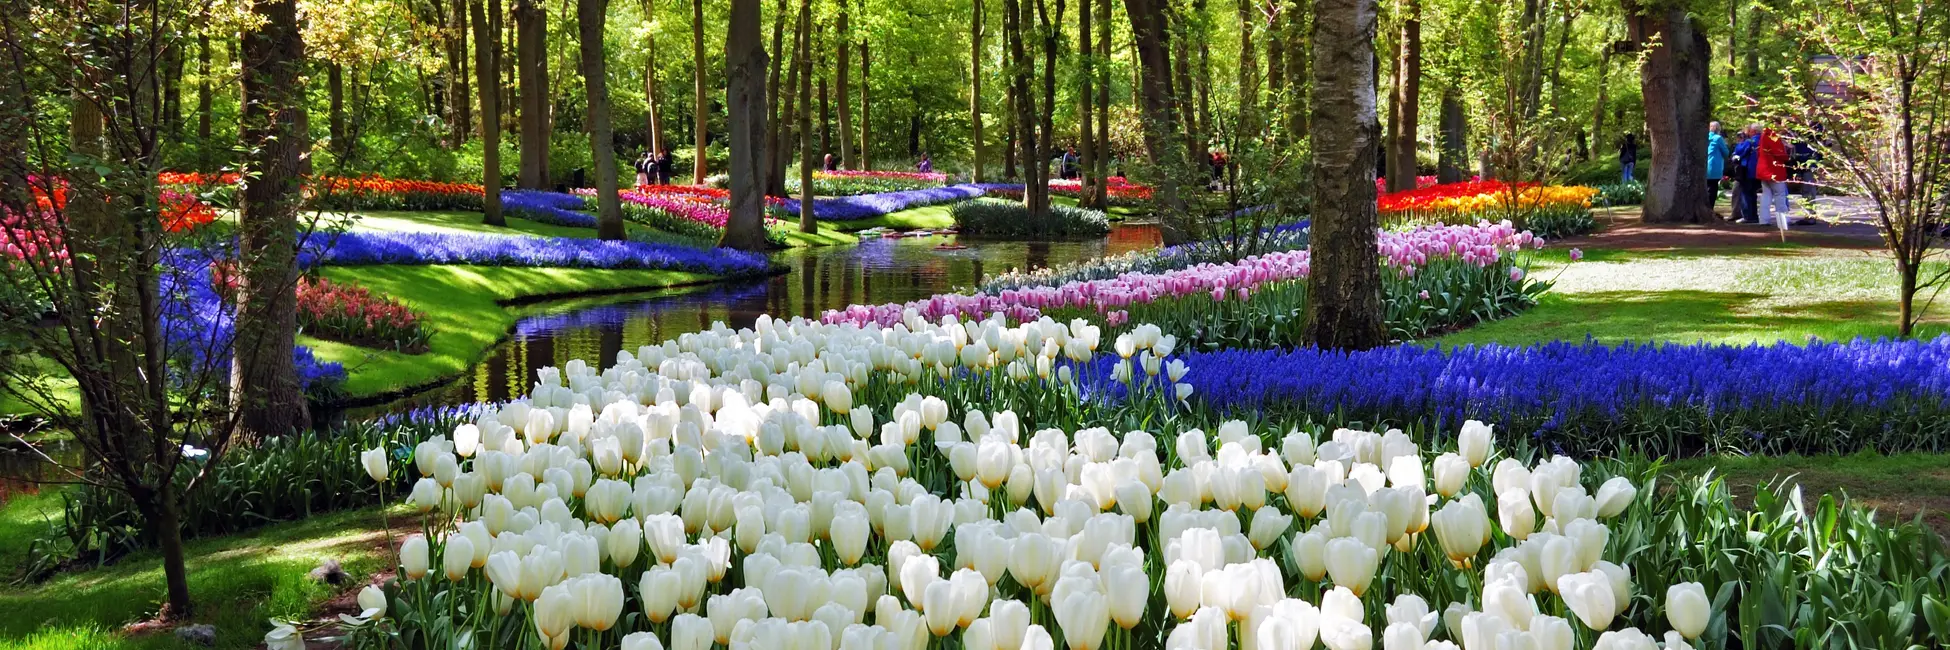 Le parc floral et coloré de Keukenhof 